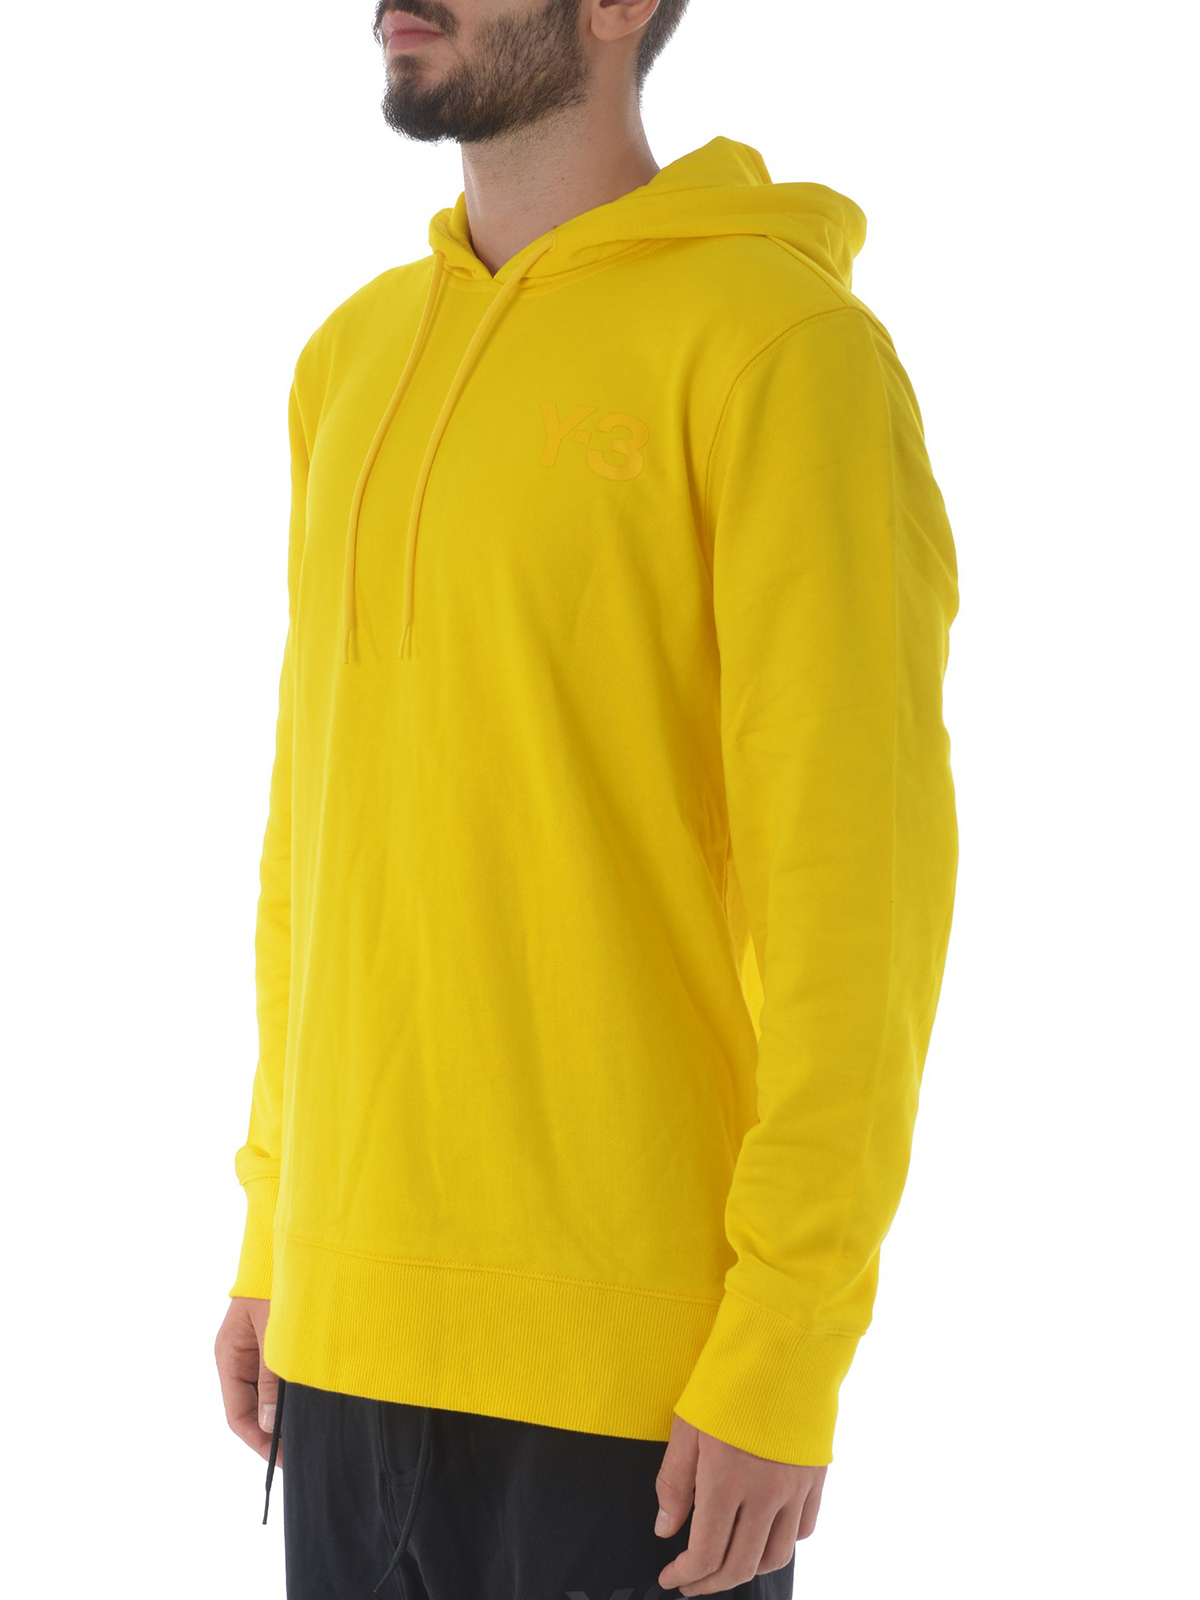 y3 yellow hoodie